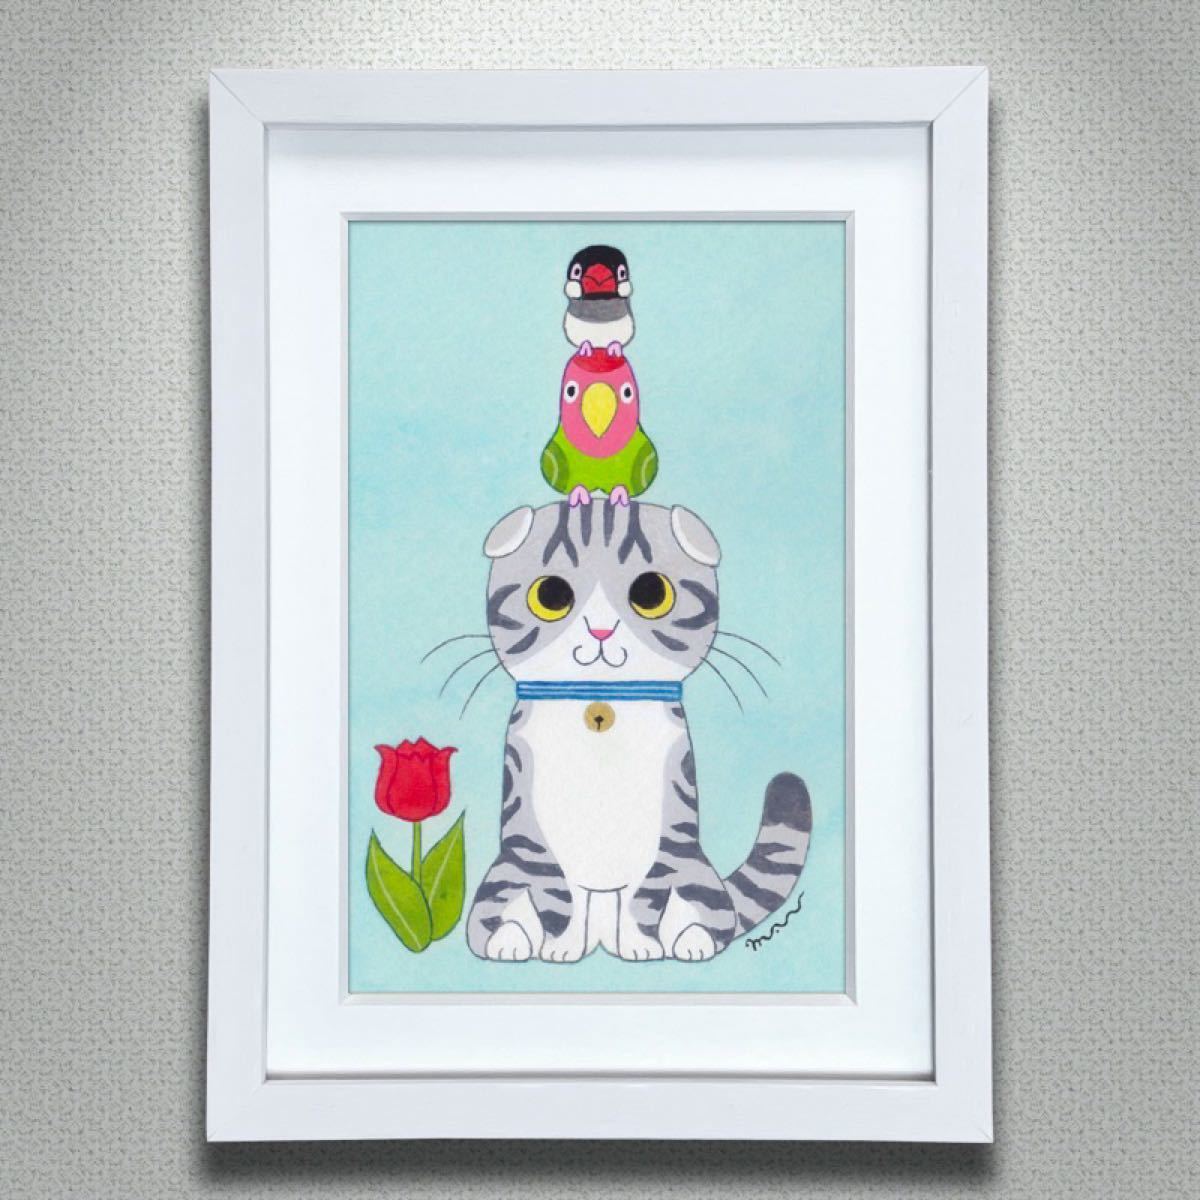 Paypayフリマ 絵本作家の原画 猫と小鳥 スコティッシュフォールド 鳥 猫 イラスト 絵 絵画 野良スコ